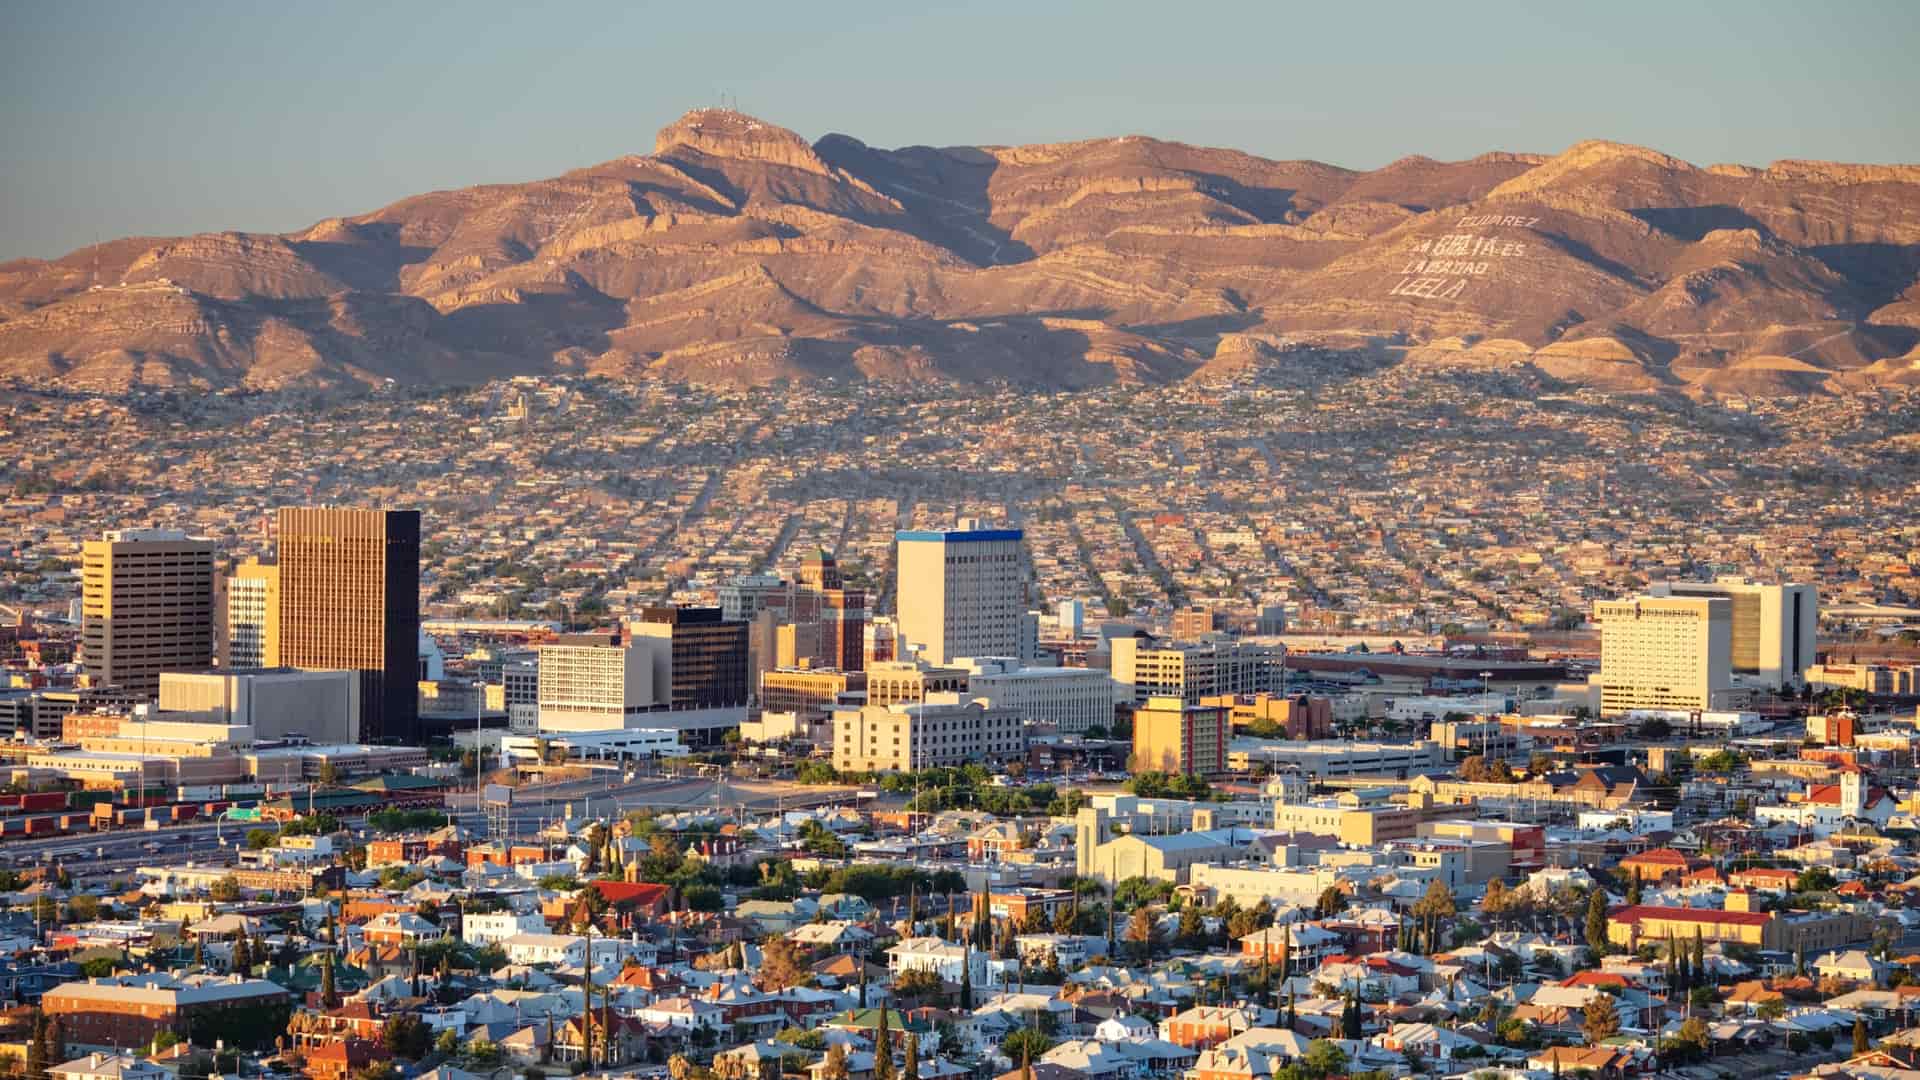 Paisaje de Ciudad Juarez desde el aire donde es posible encontrar una sucursal de compañía telefónica att